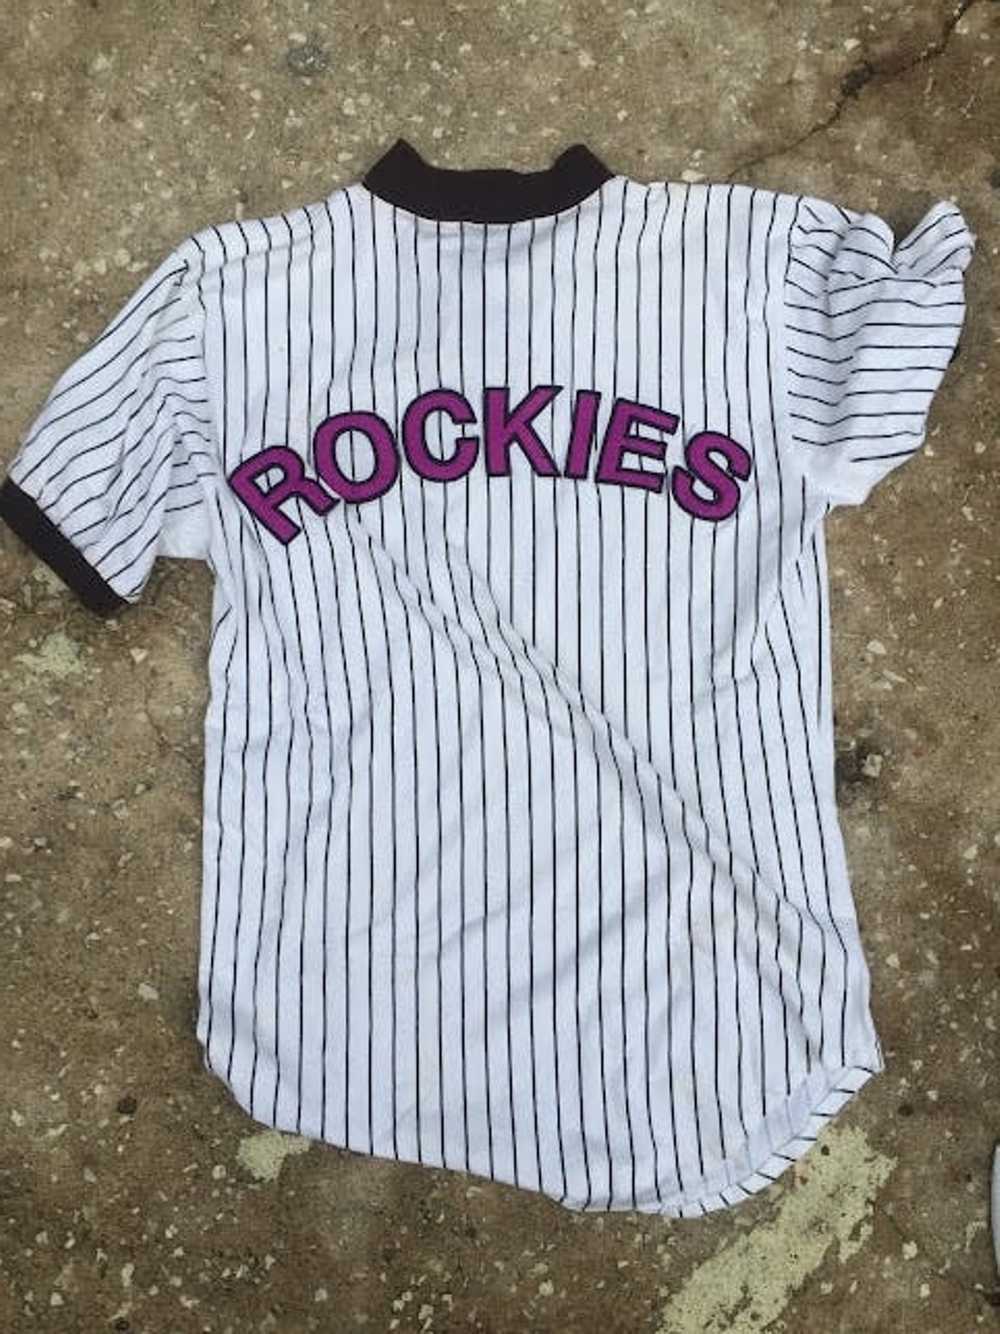 MLB vintage Colorado Rockies jersey - image 2